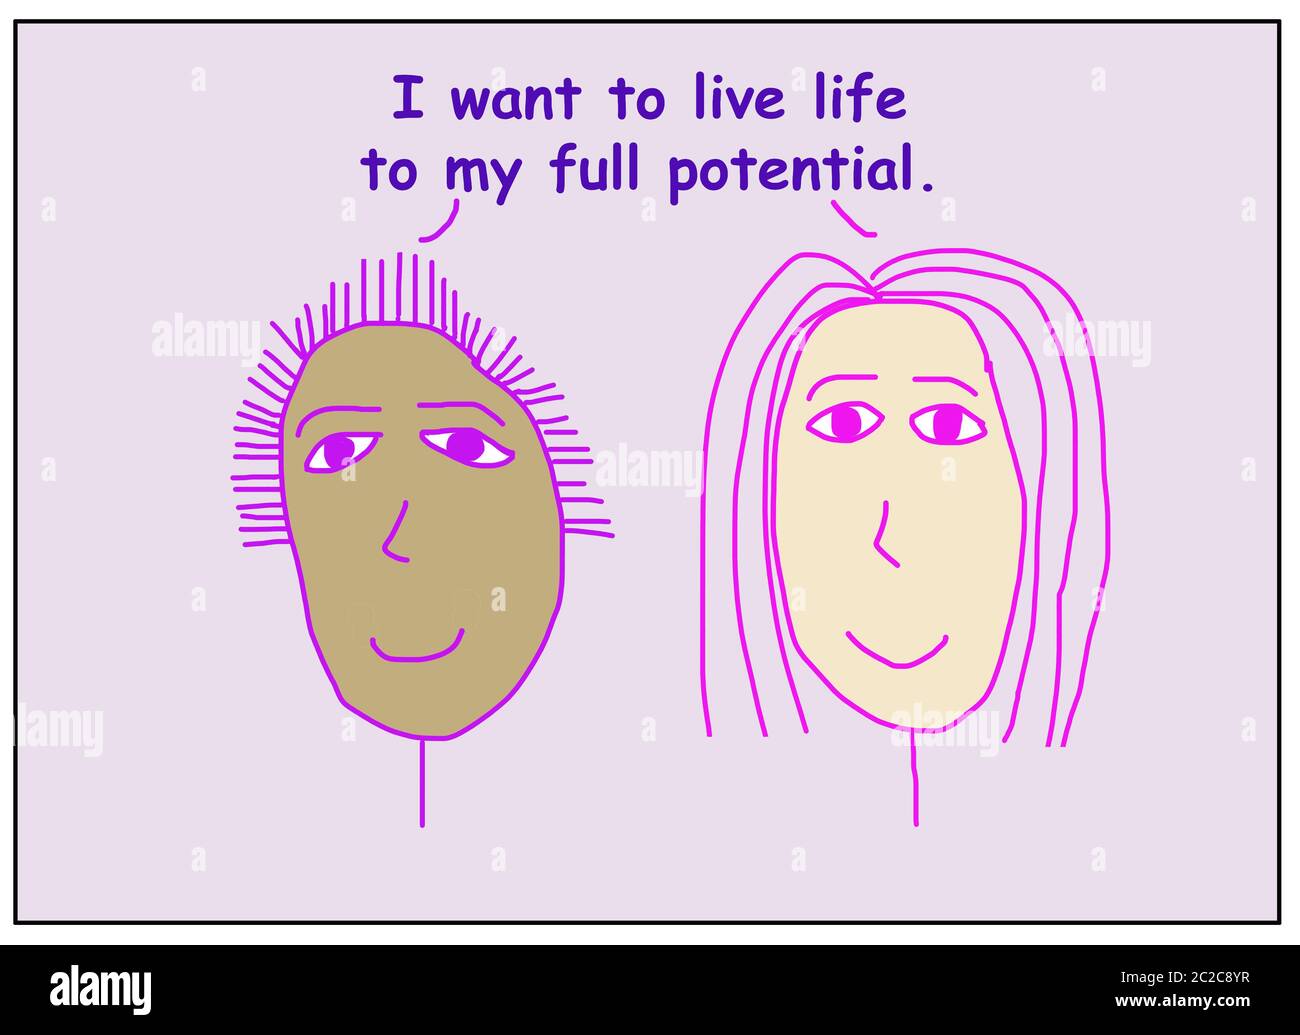 Farb-Cartoon von zwei lächelnden, schönen und ethnisch verschiedenen Frauen, die sagen, ich will mein Leben zu meinem vollen Potenzial leben. Stockfoto